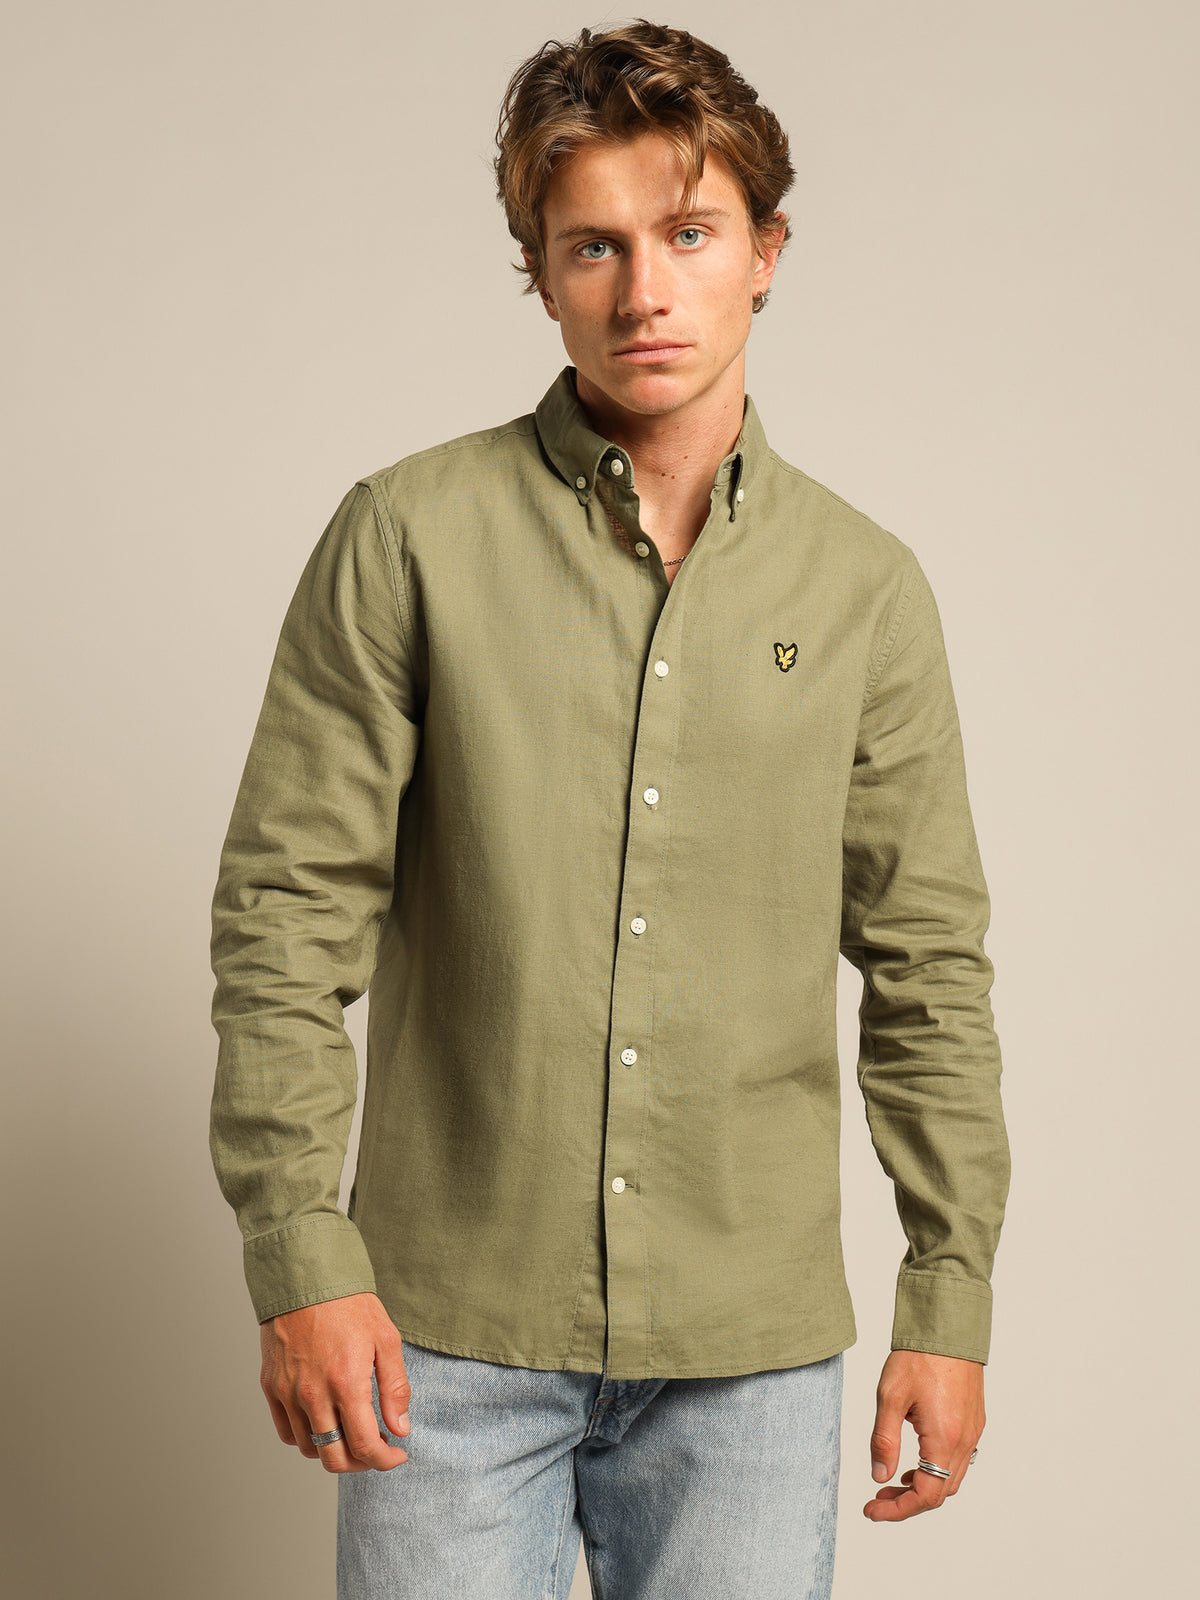 Cotton Linen Long Sleeve Shirt in Green